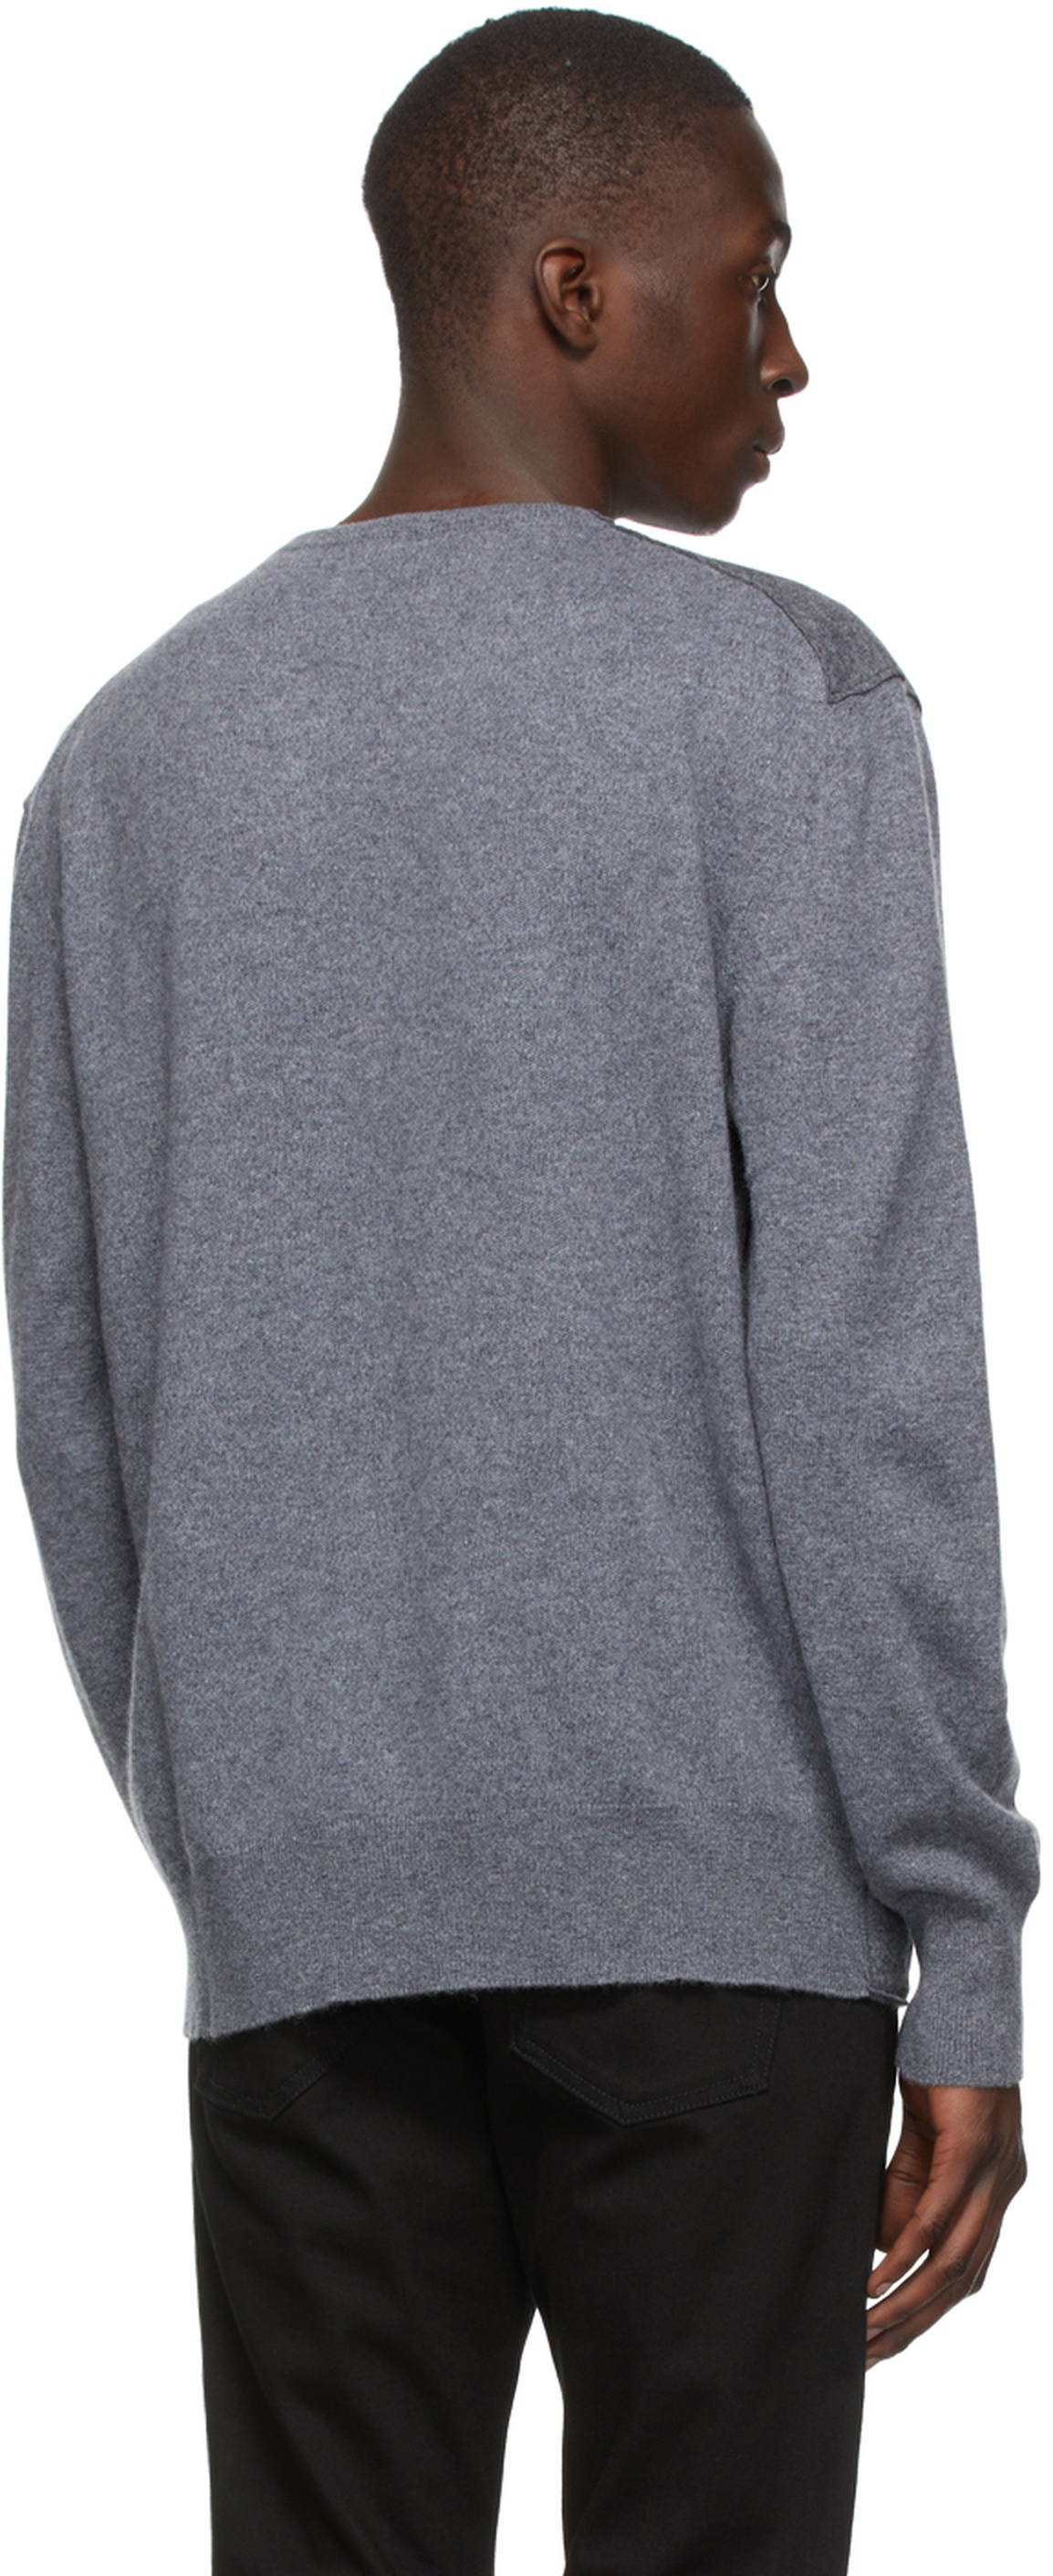 Ermenegildo Zegna Couture Grey Cashmere Sweater ermenegildo zegna couture